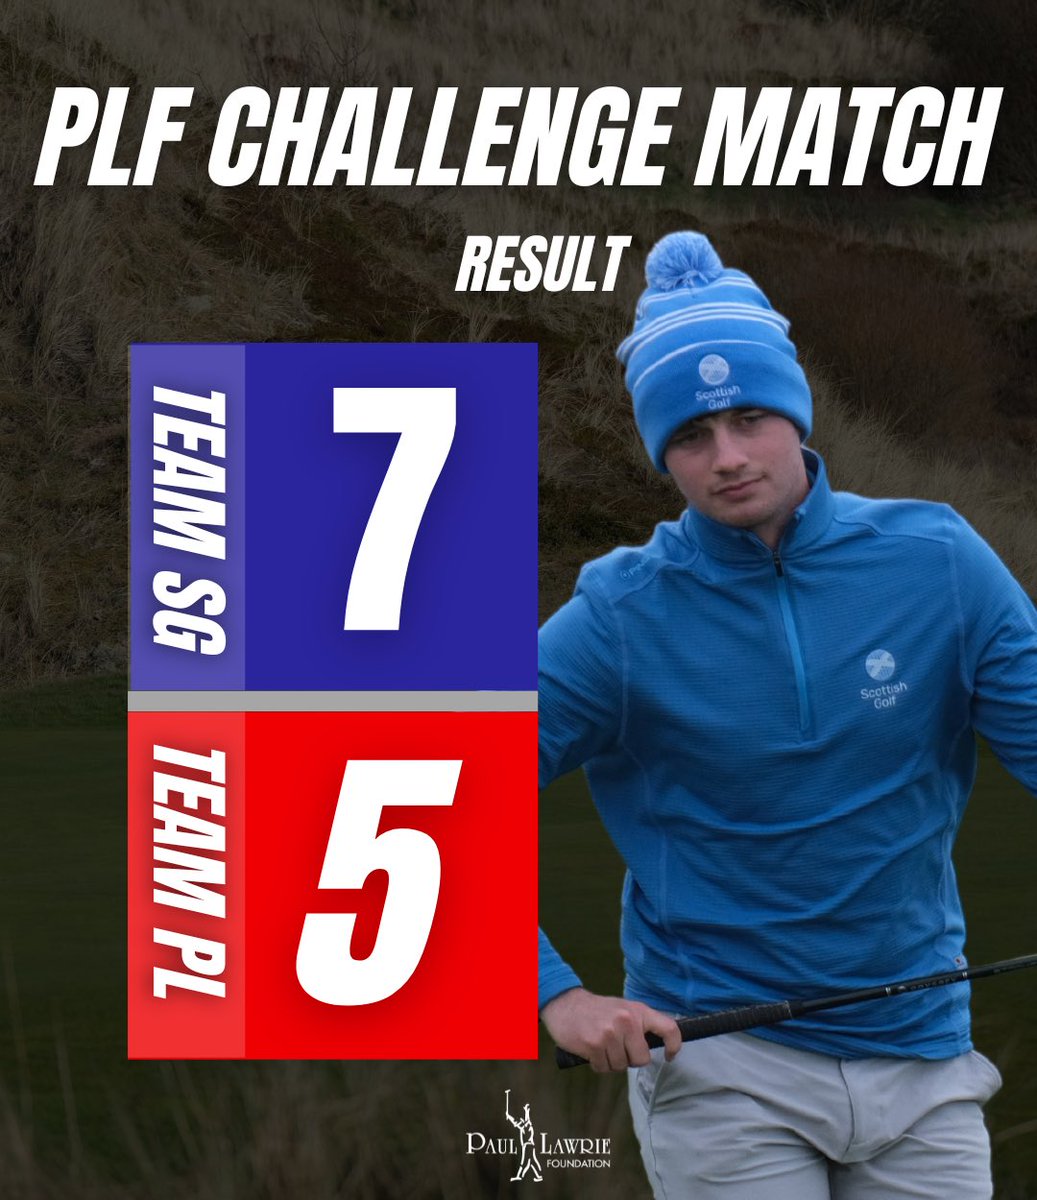 Team Scottish Golf came up trumps 🏆 #PLFChallengeMatch